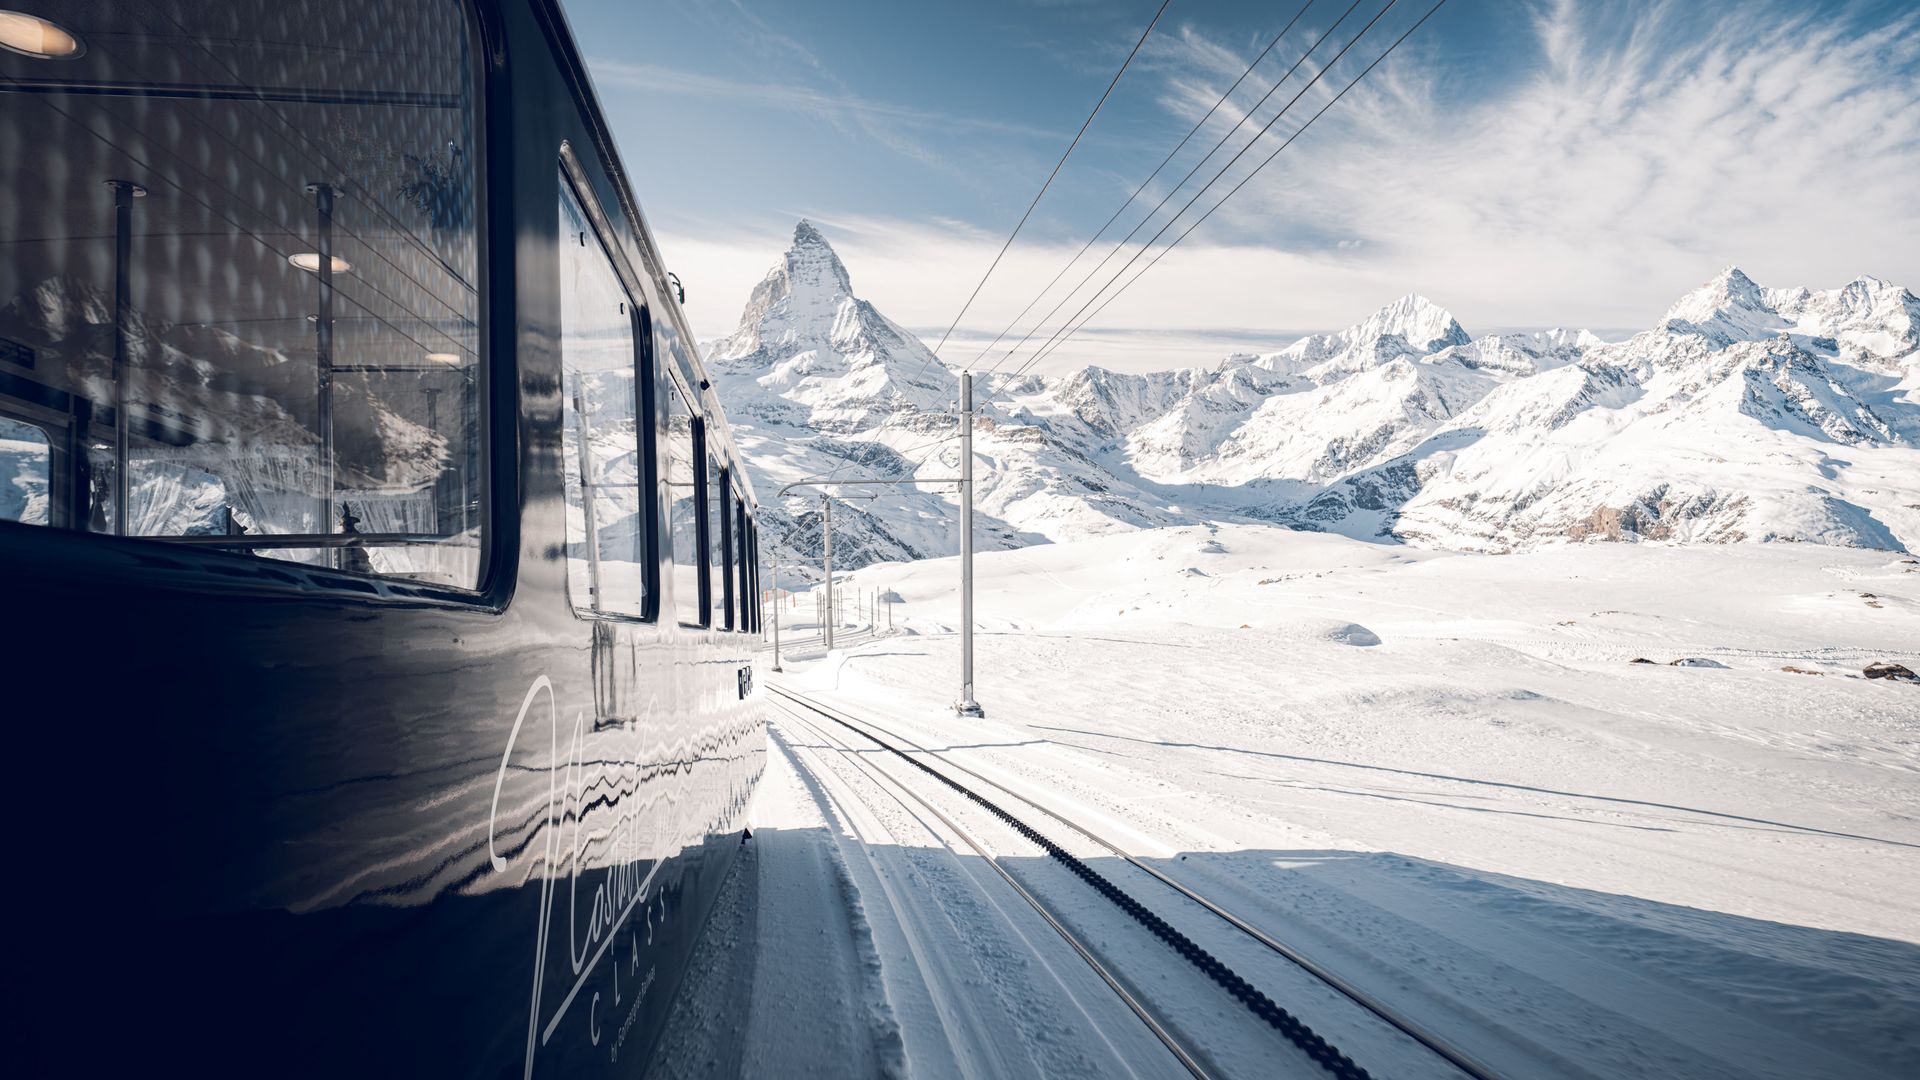 NostalChic Class from outside, winter, view of the Matterhorn